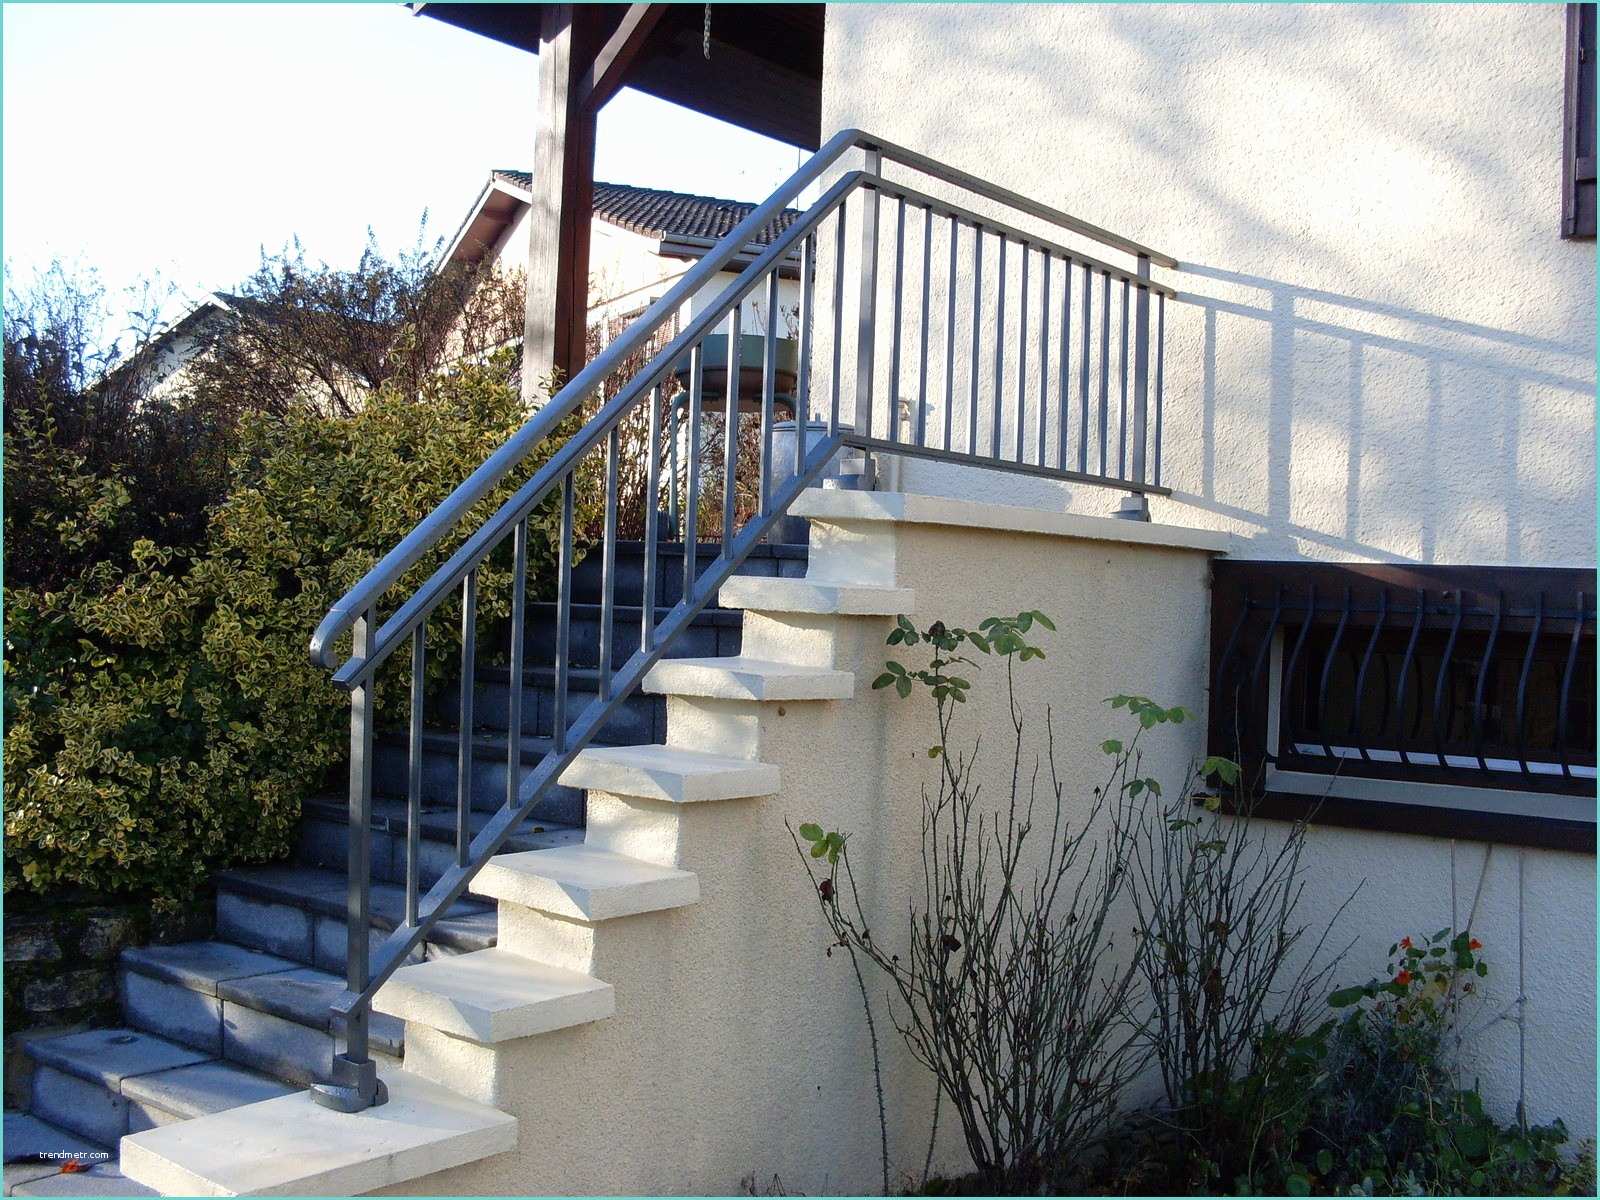 barriere terrasse pas cher avec balustrade pvc pour terrasse balustrades tous les fournisseurs idees et balustrade terrasse 2 avec px barriere terrasse pas cher